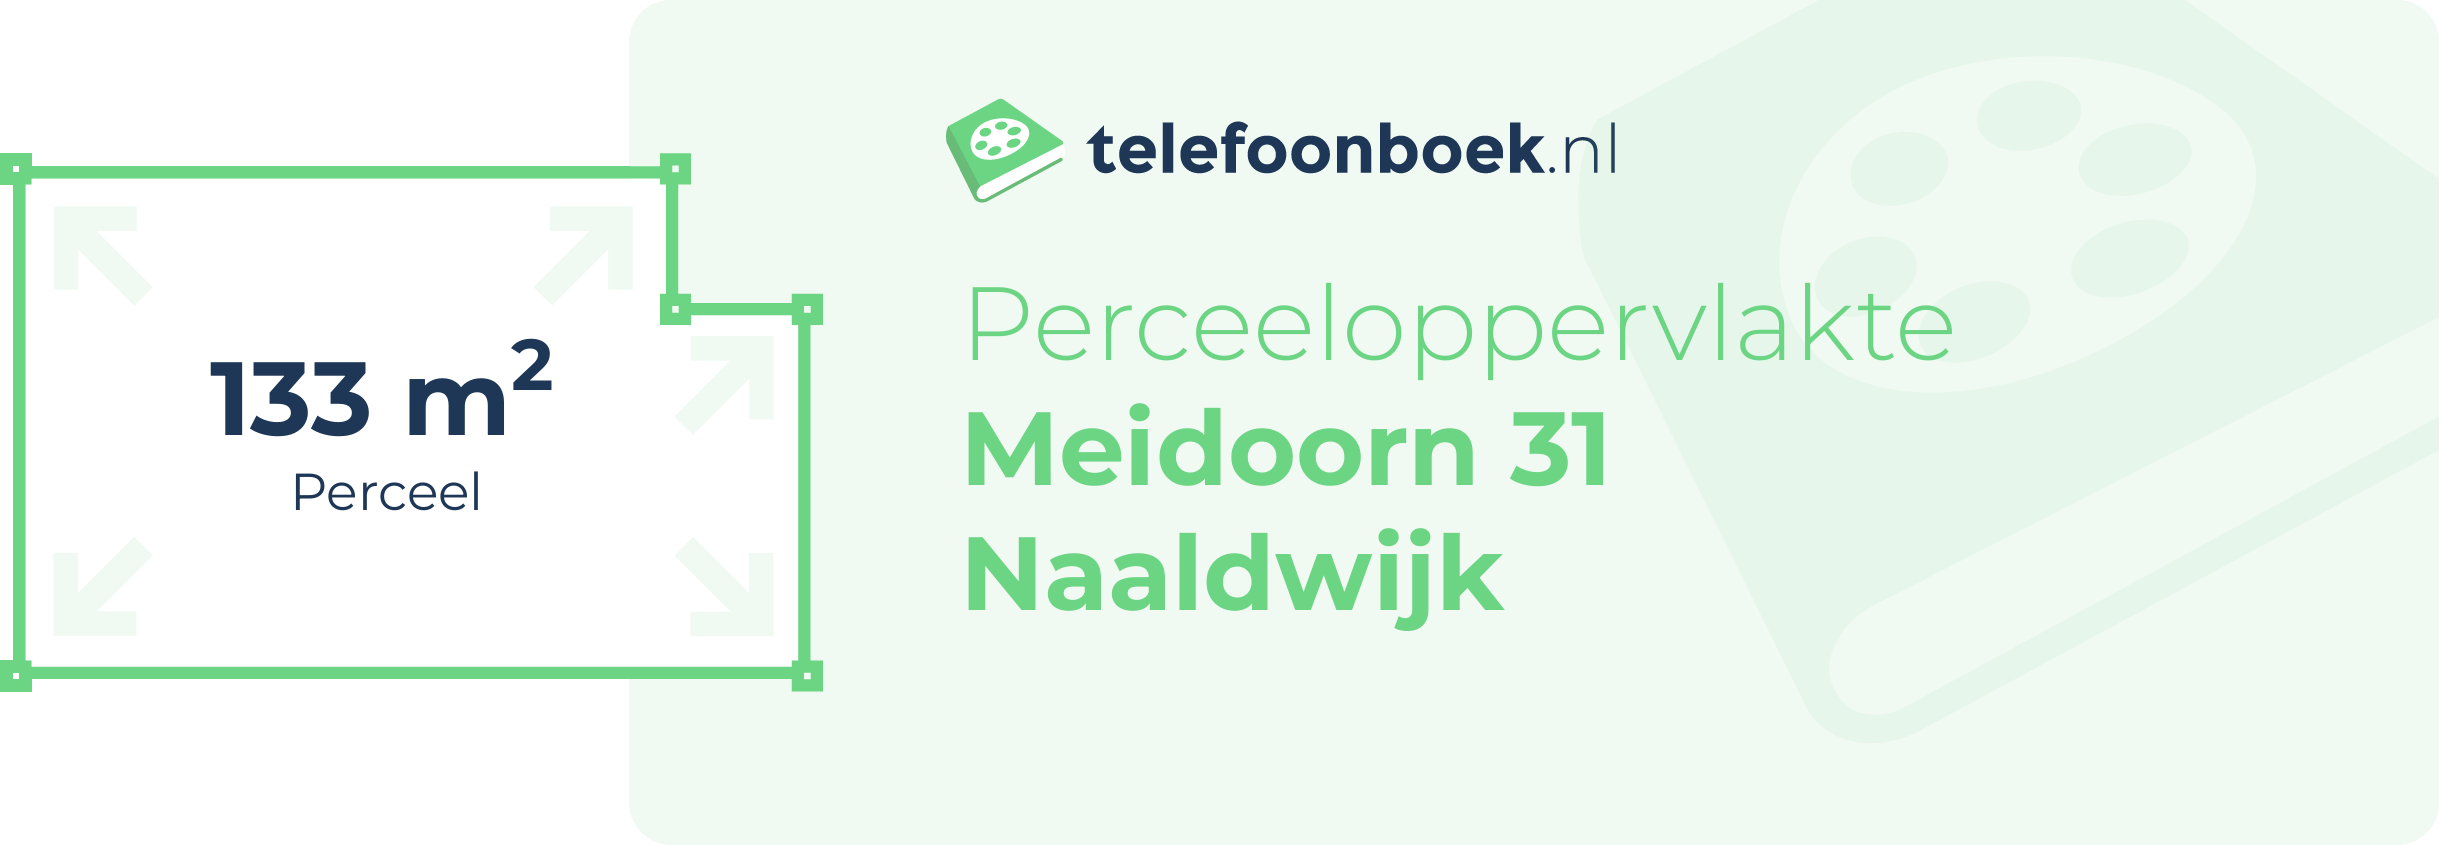 Perceeloppervlakte Meidoorn 31 Naaldwijk